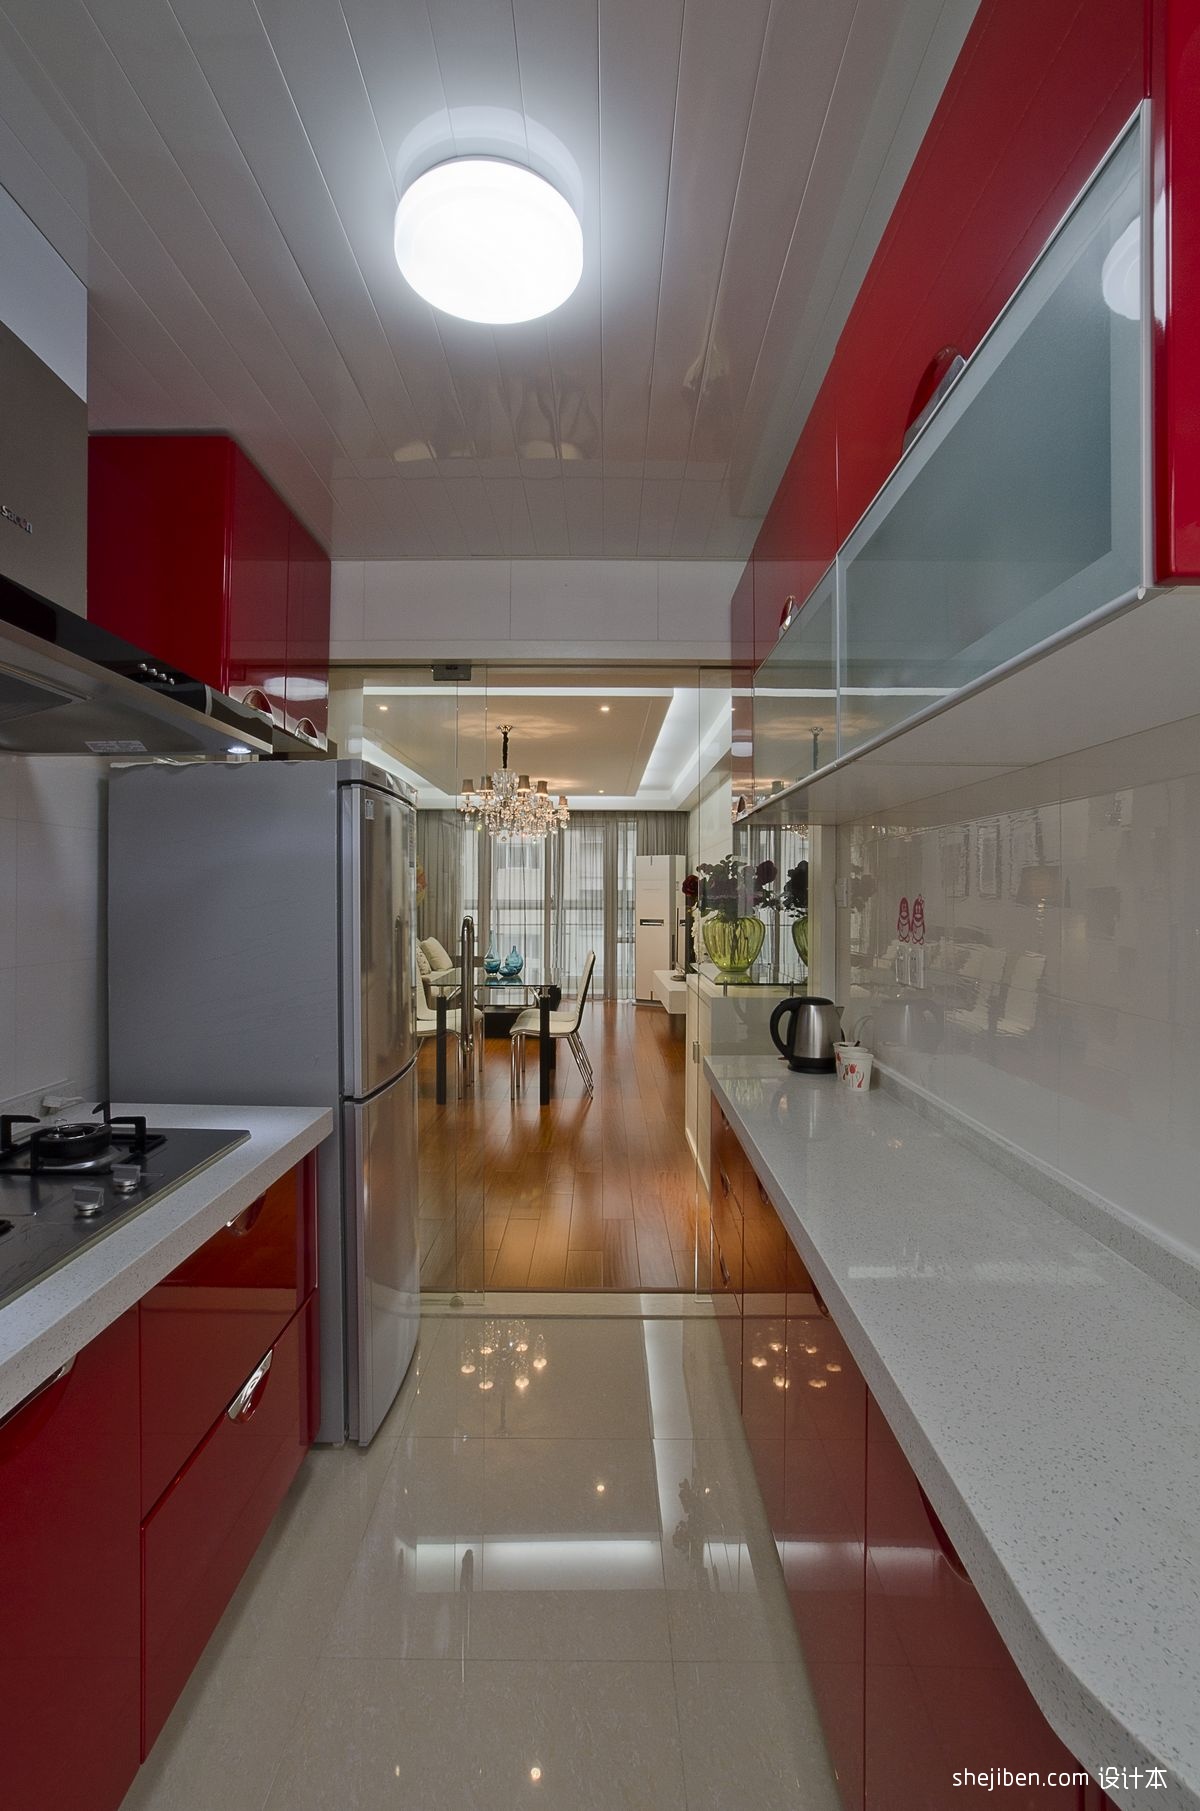 2013地中海风格L型整体6平米家居白色橱柜厨房墙面瓷砖装修效果图欣赏 – 设计本装修效果图